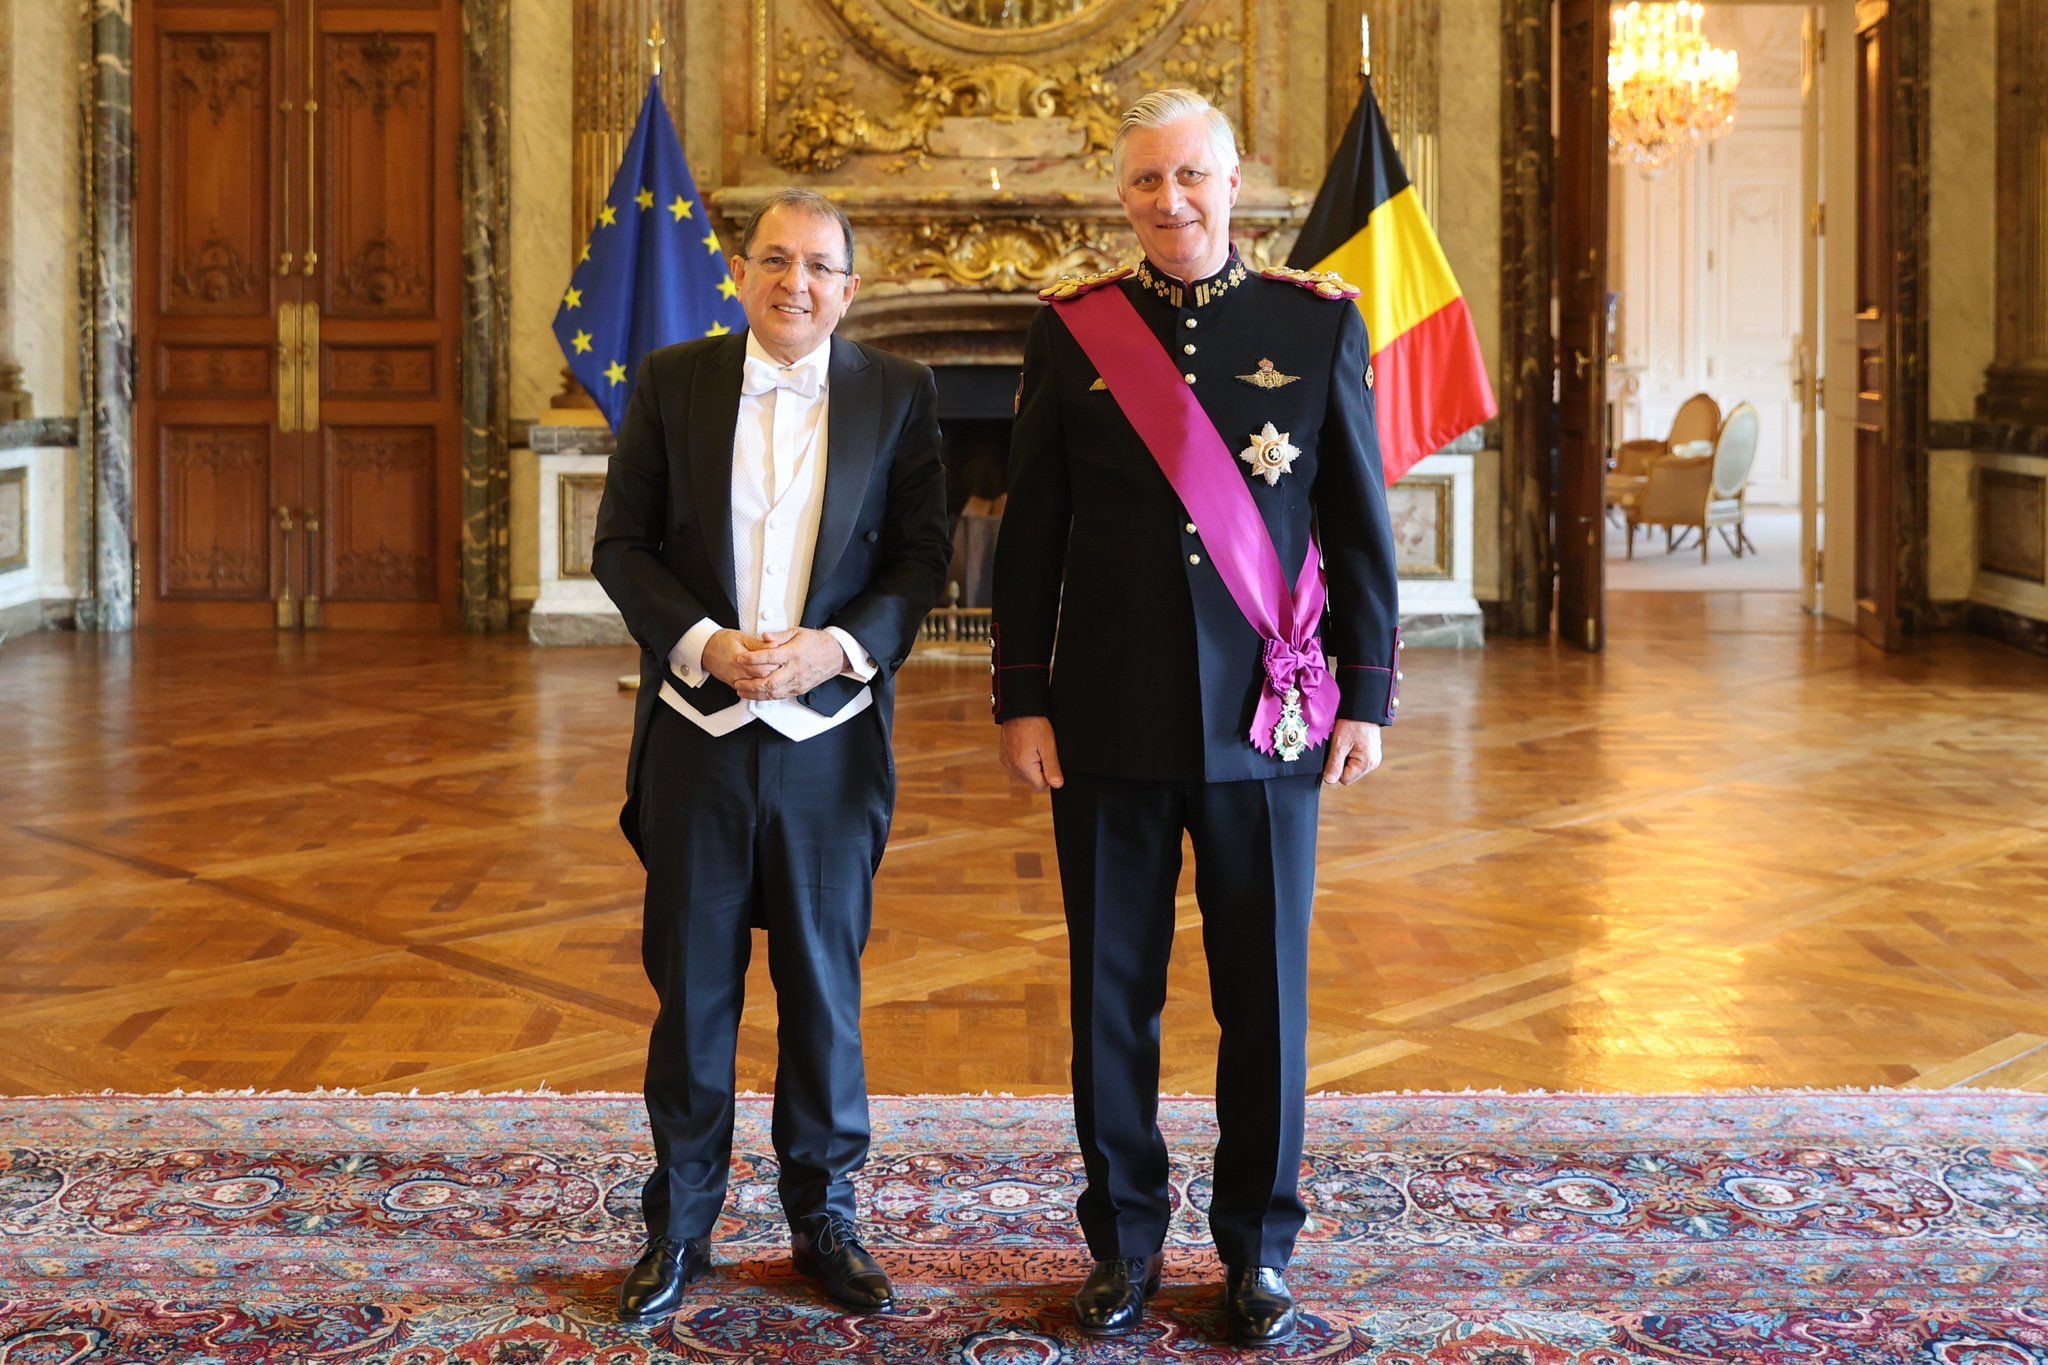 Embajador Jorge Rojas Rodriguez presentó cartas credenciales a Su Majestad el Rey Felipe I de Bélgica